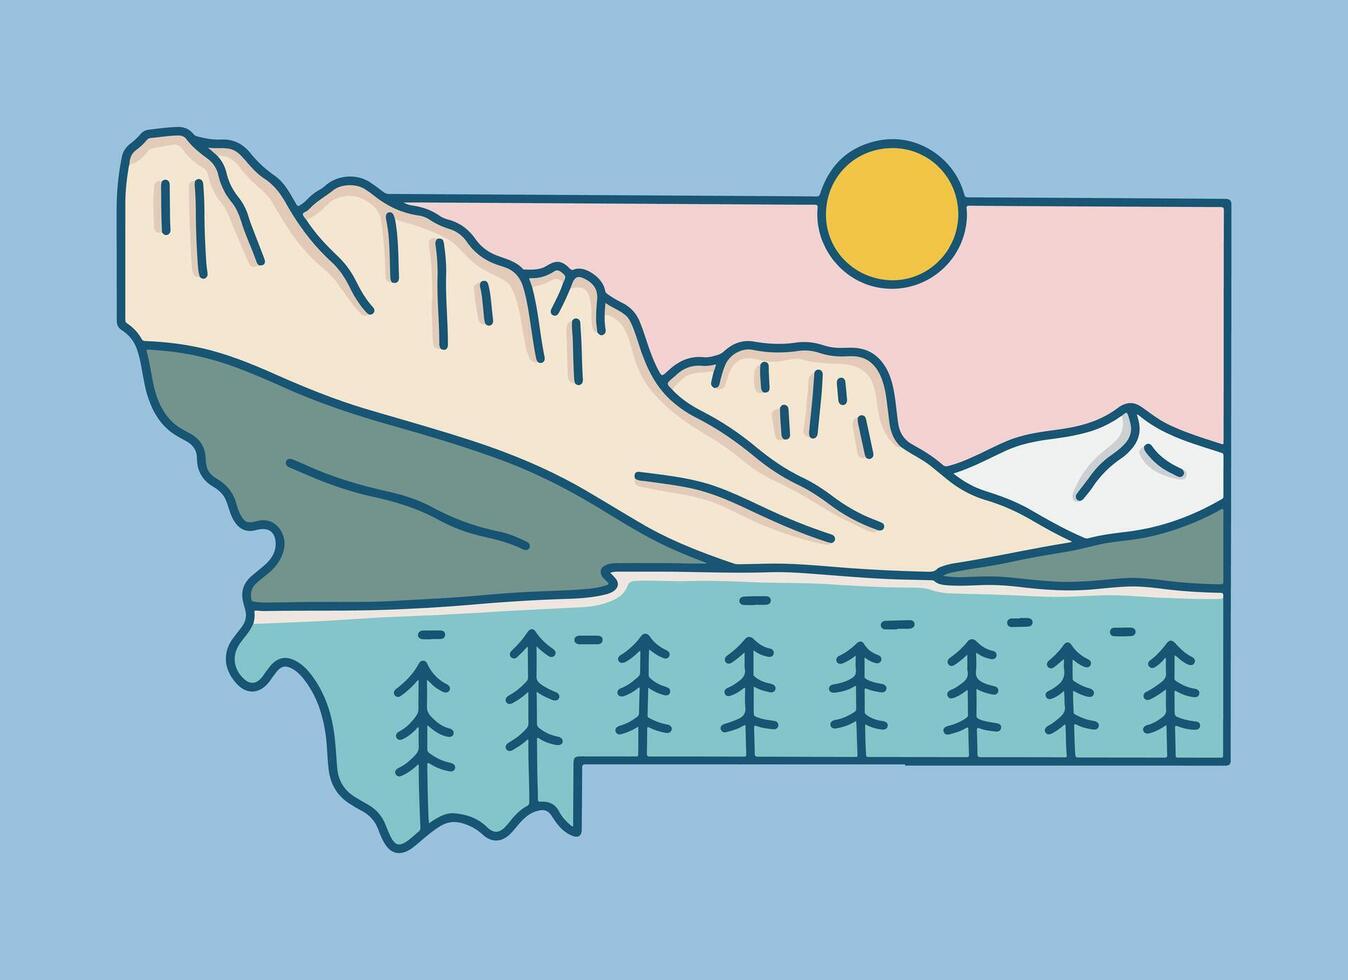 ghiacciaio nazionale parco nel Montana mono linea vettore illustrazione design